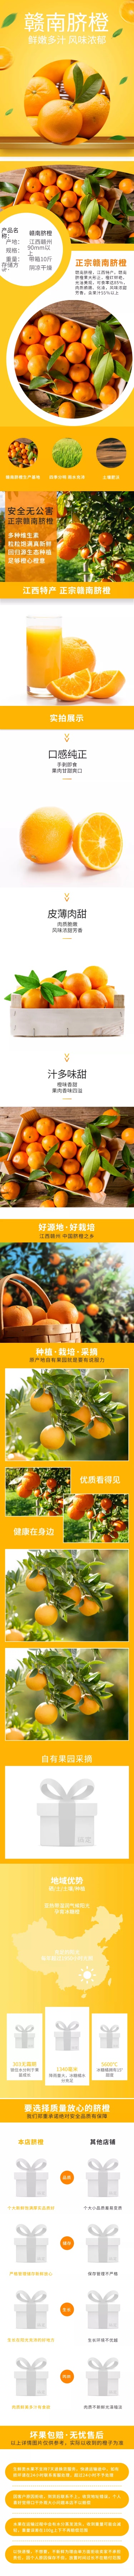 简约食品生鲜水果脐橙详情页